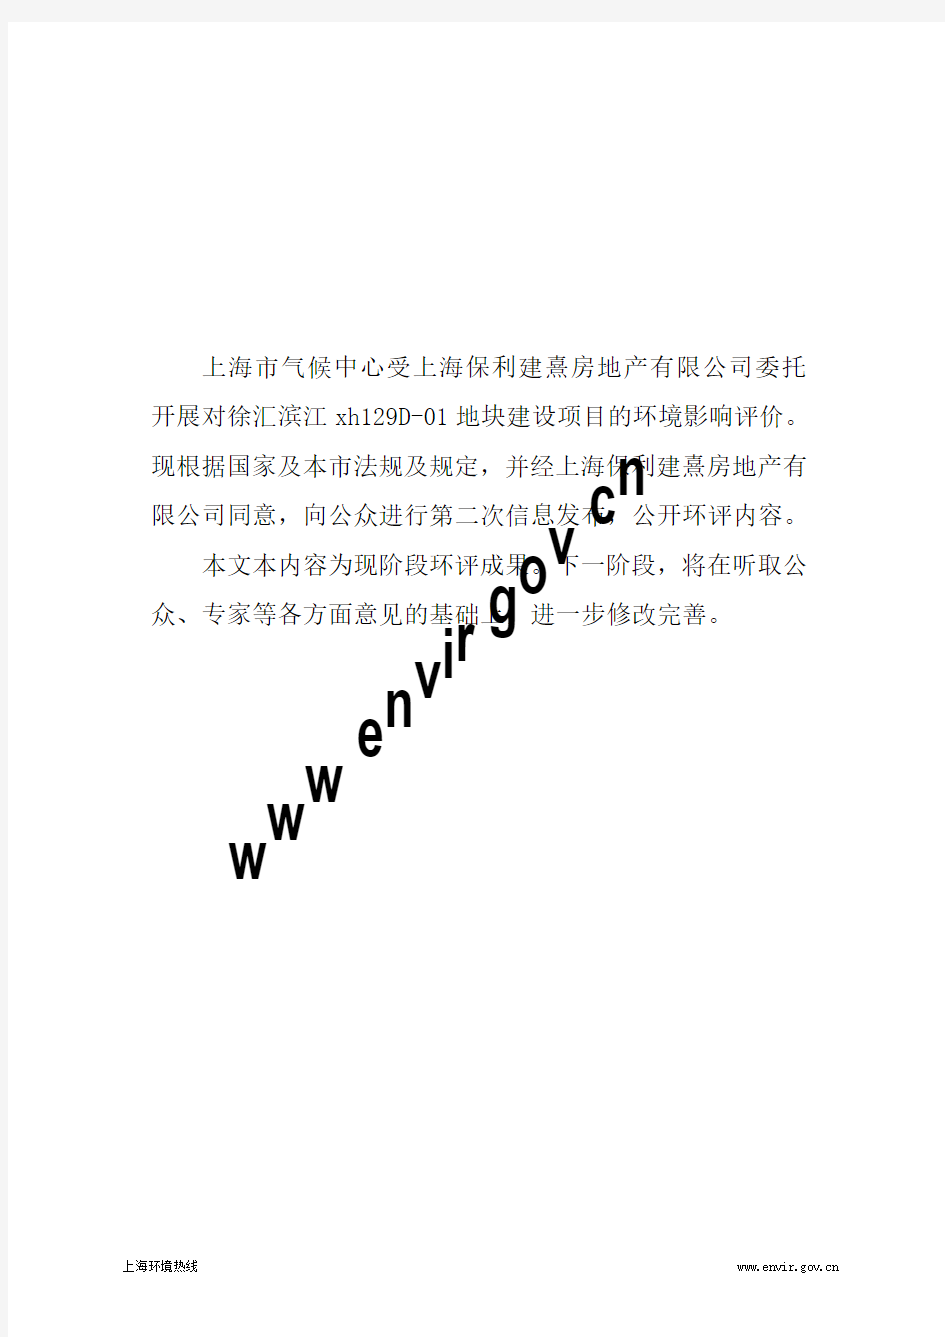 201212-徐汇滨江xh129D-01地块(暂定名)建设项目环境影响评价第二次公示